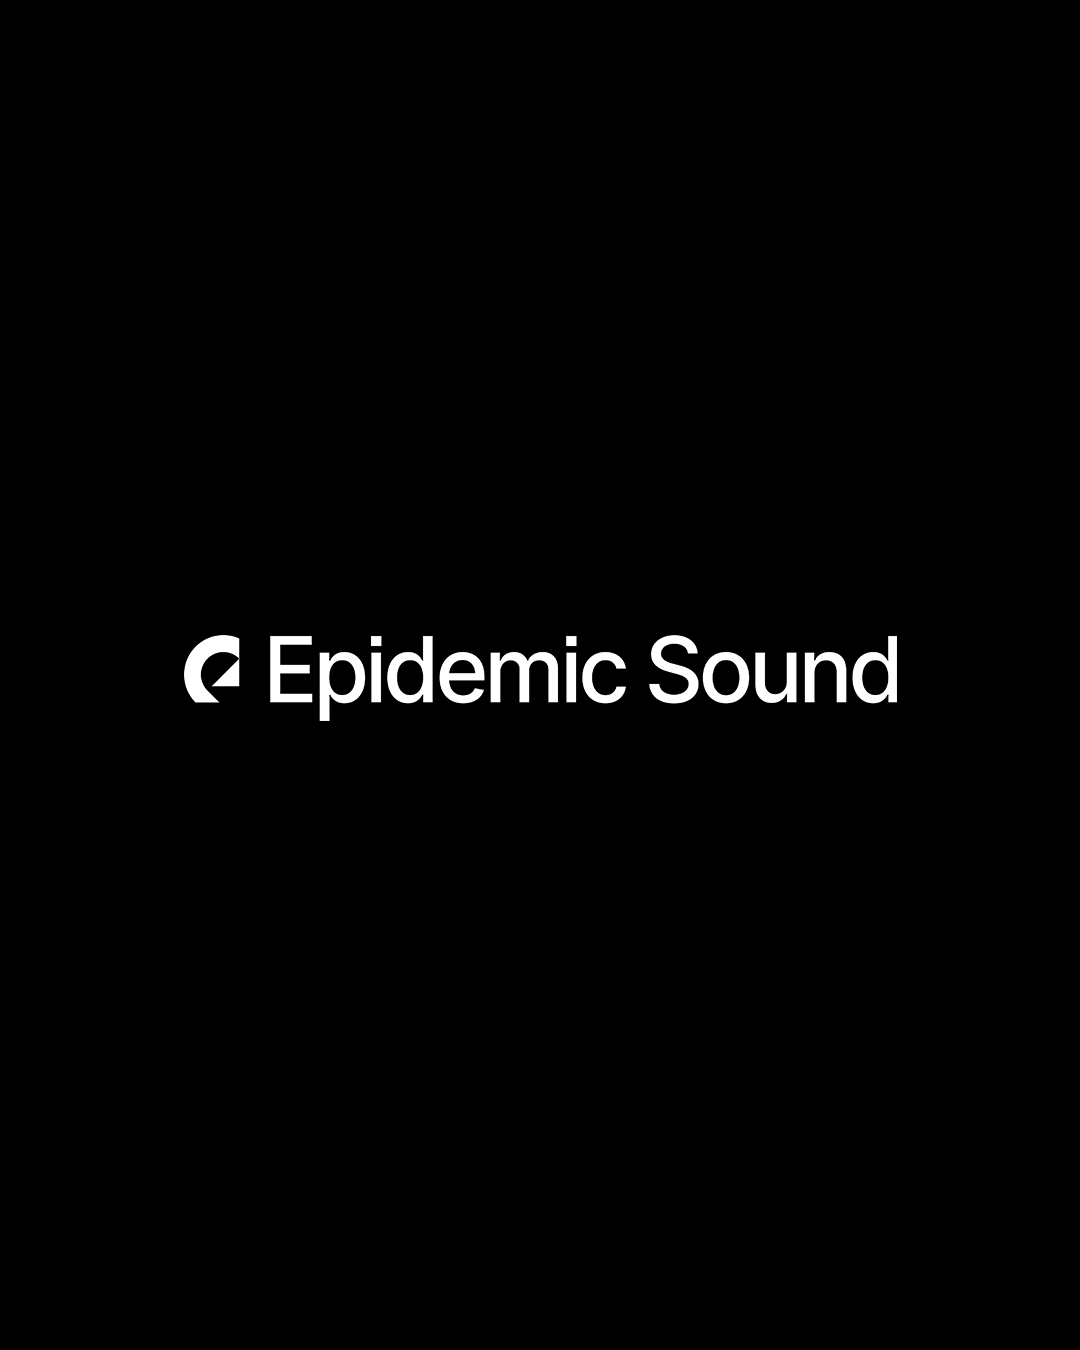 Epidemic Sound Launches New Creator-Led Identity